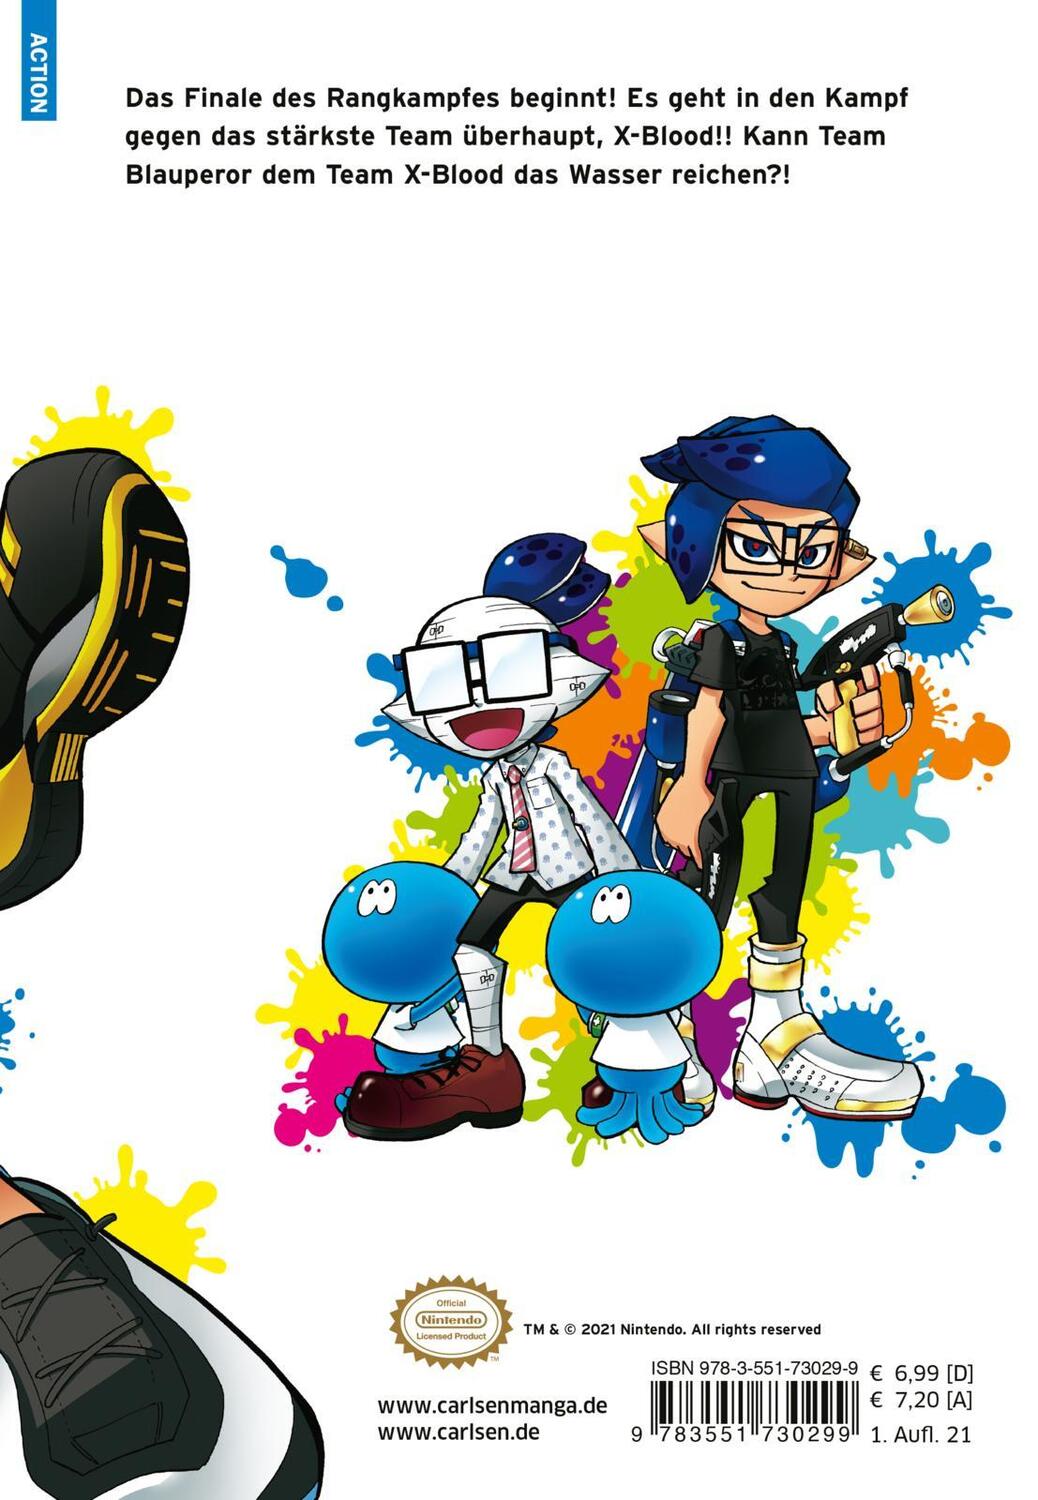 Rückseite: 9783551793874 | Splatoon 11 | Das Nintendo-Game als Manga! Ideal für Kinder und Gamer!